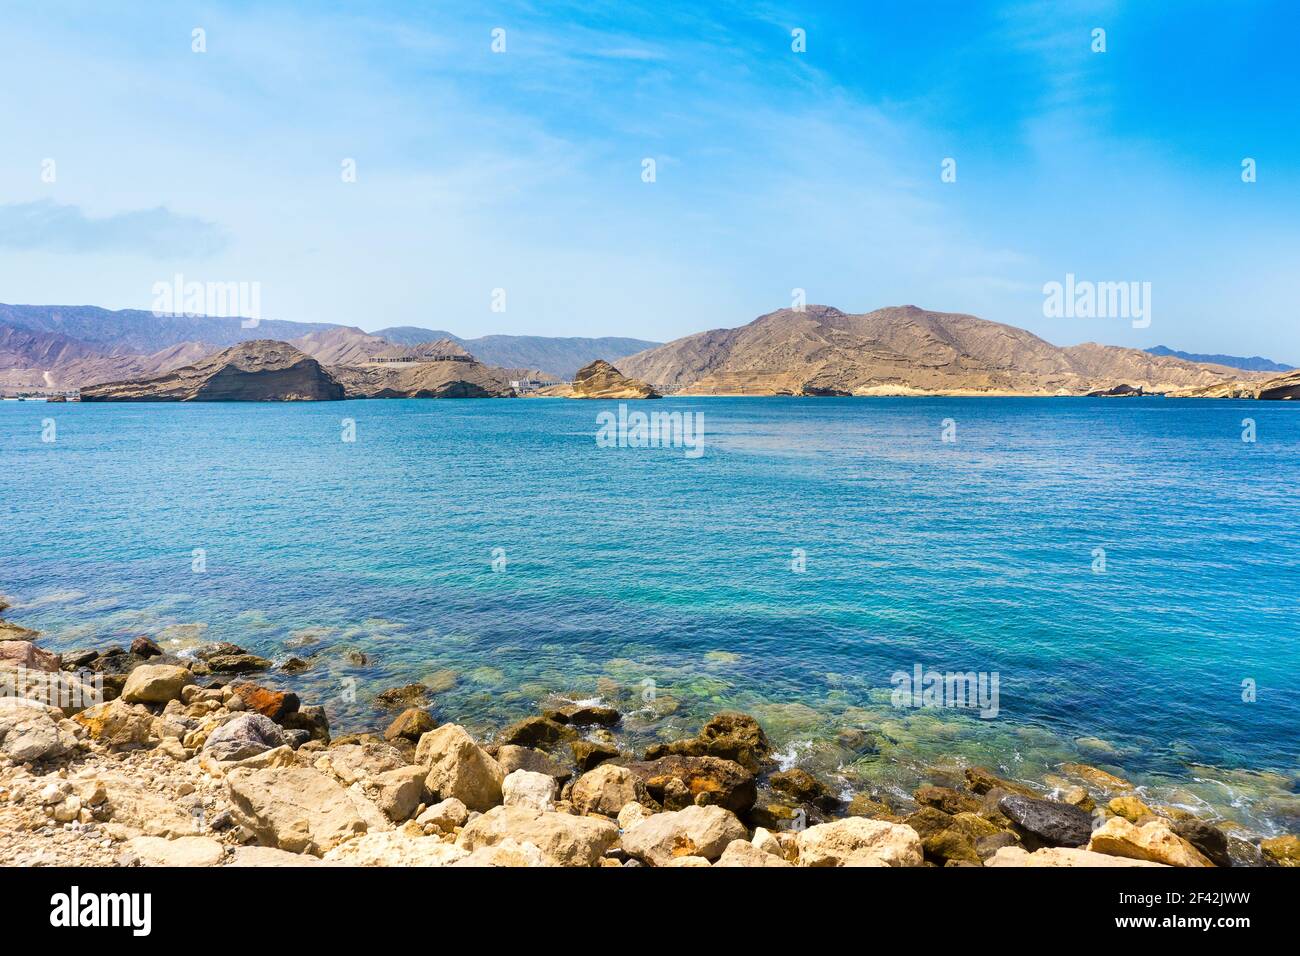 Beautiful landscape of Muscat coast, Omani Bay and Hajjar mountains, Oman Stock Photo